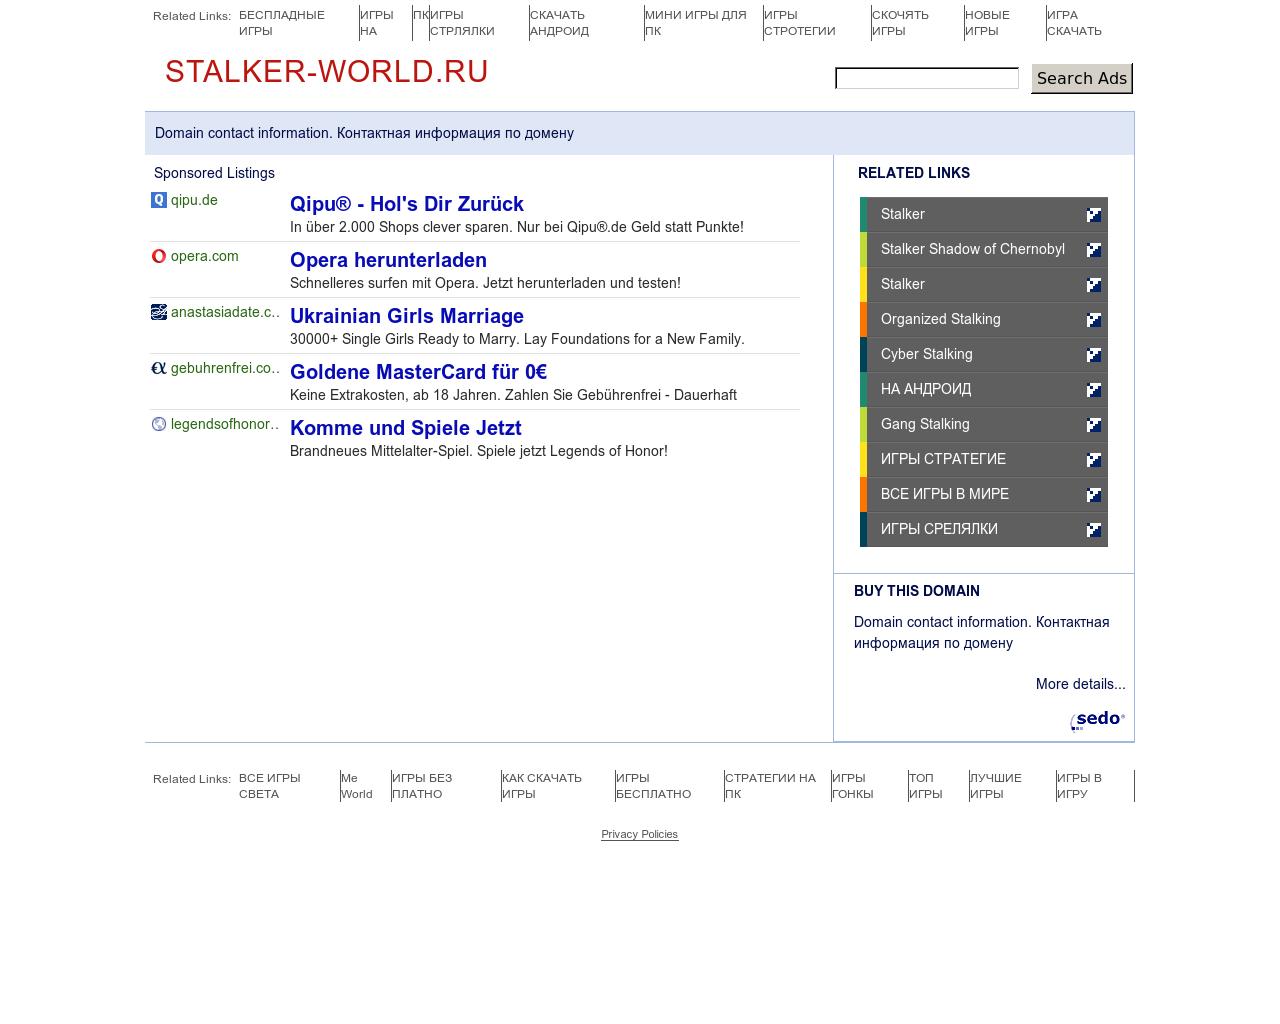 Изображение сайта stalker-world.ru в разрешении 1280x1024